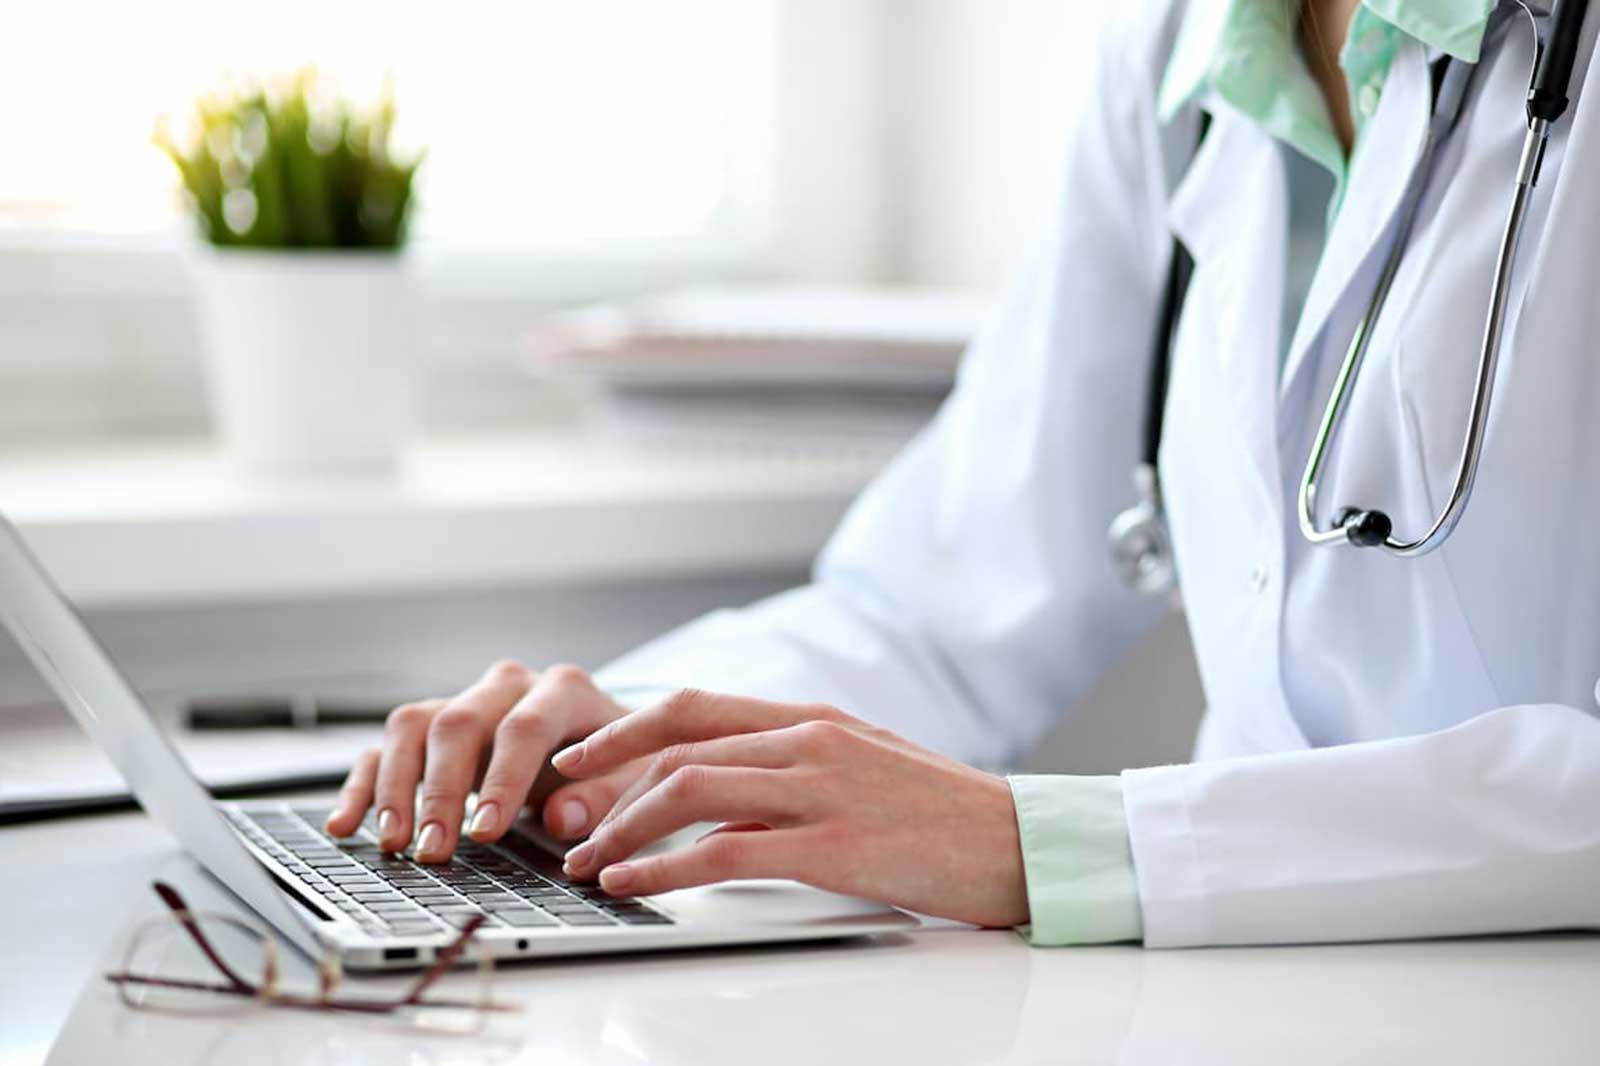 الأطباء أهداف سهلة للمحتالين عبر الإنترنت